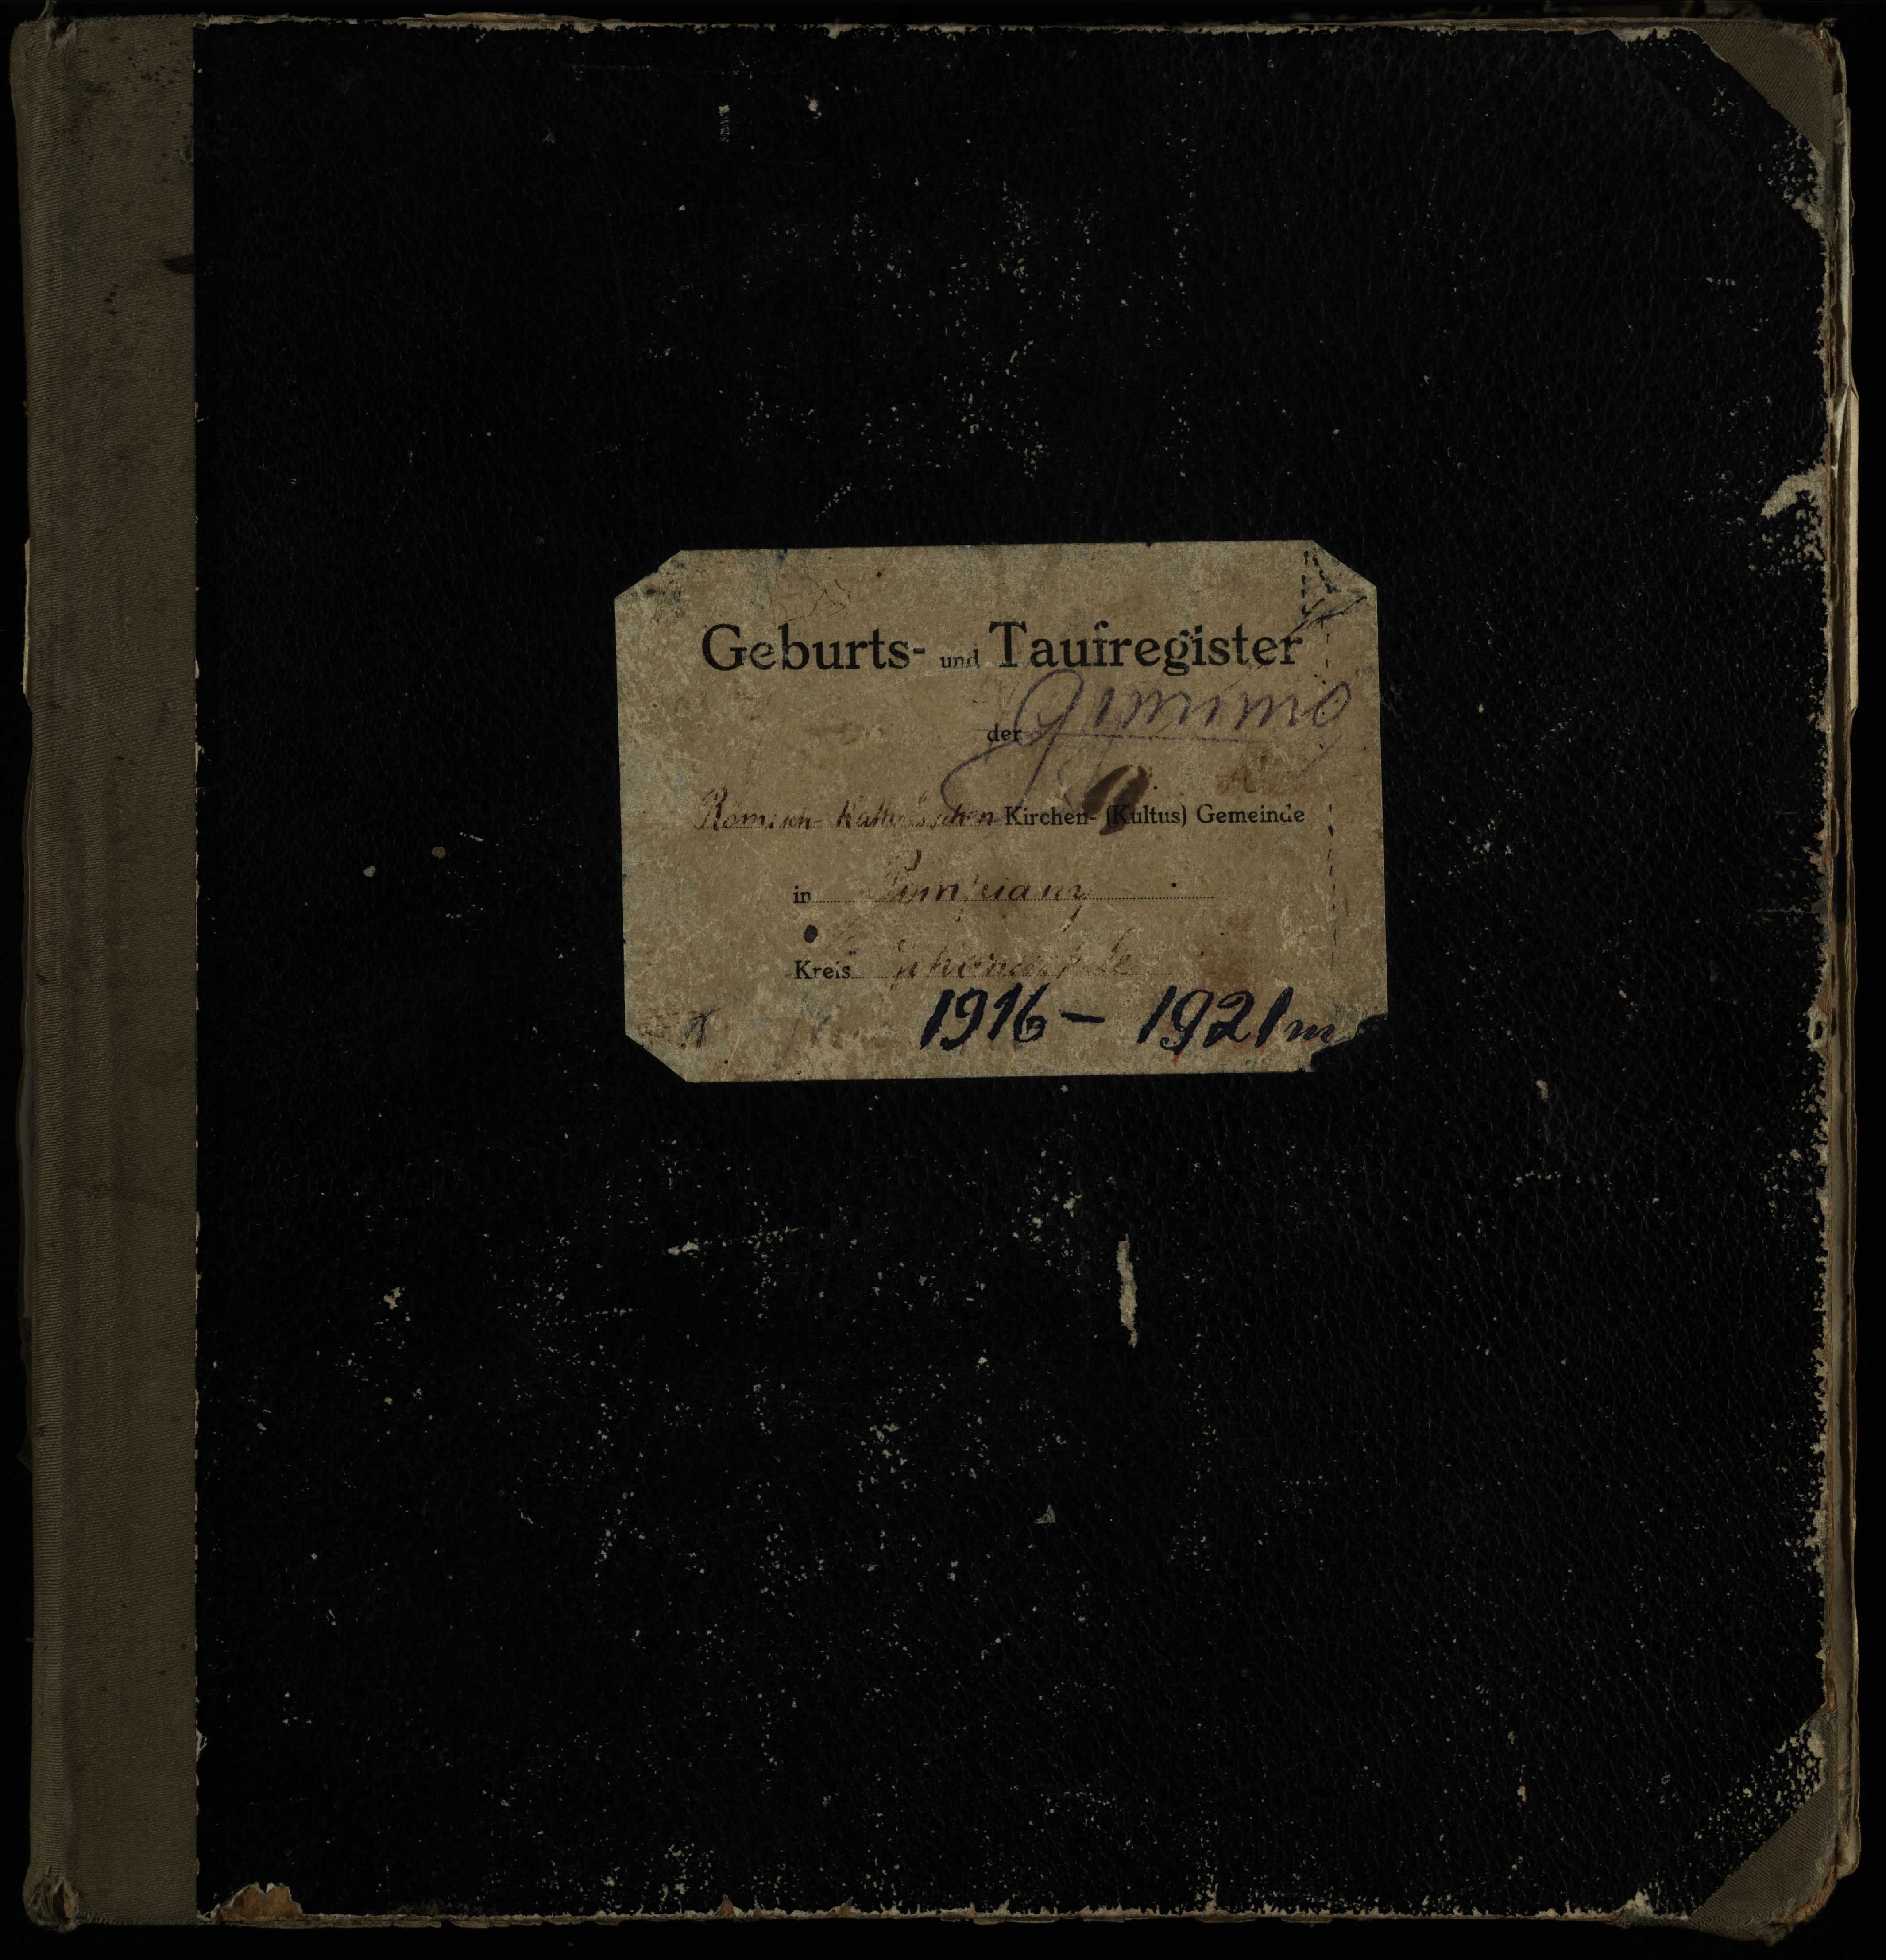 Pumpėnų Romos katalikų parapijos bažnyčios 1916–1921 metų krikšto metrikų knyga